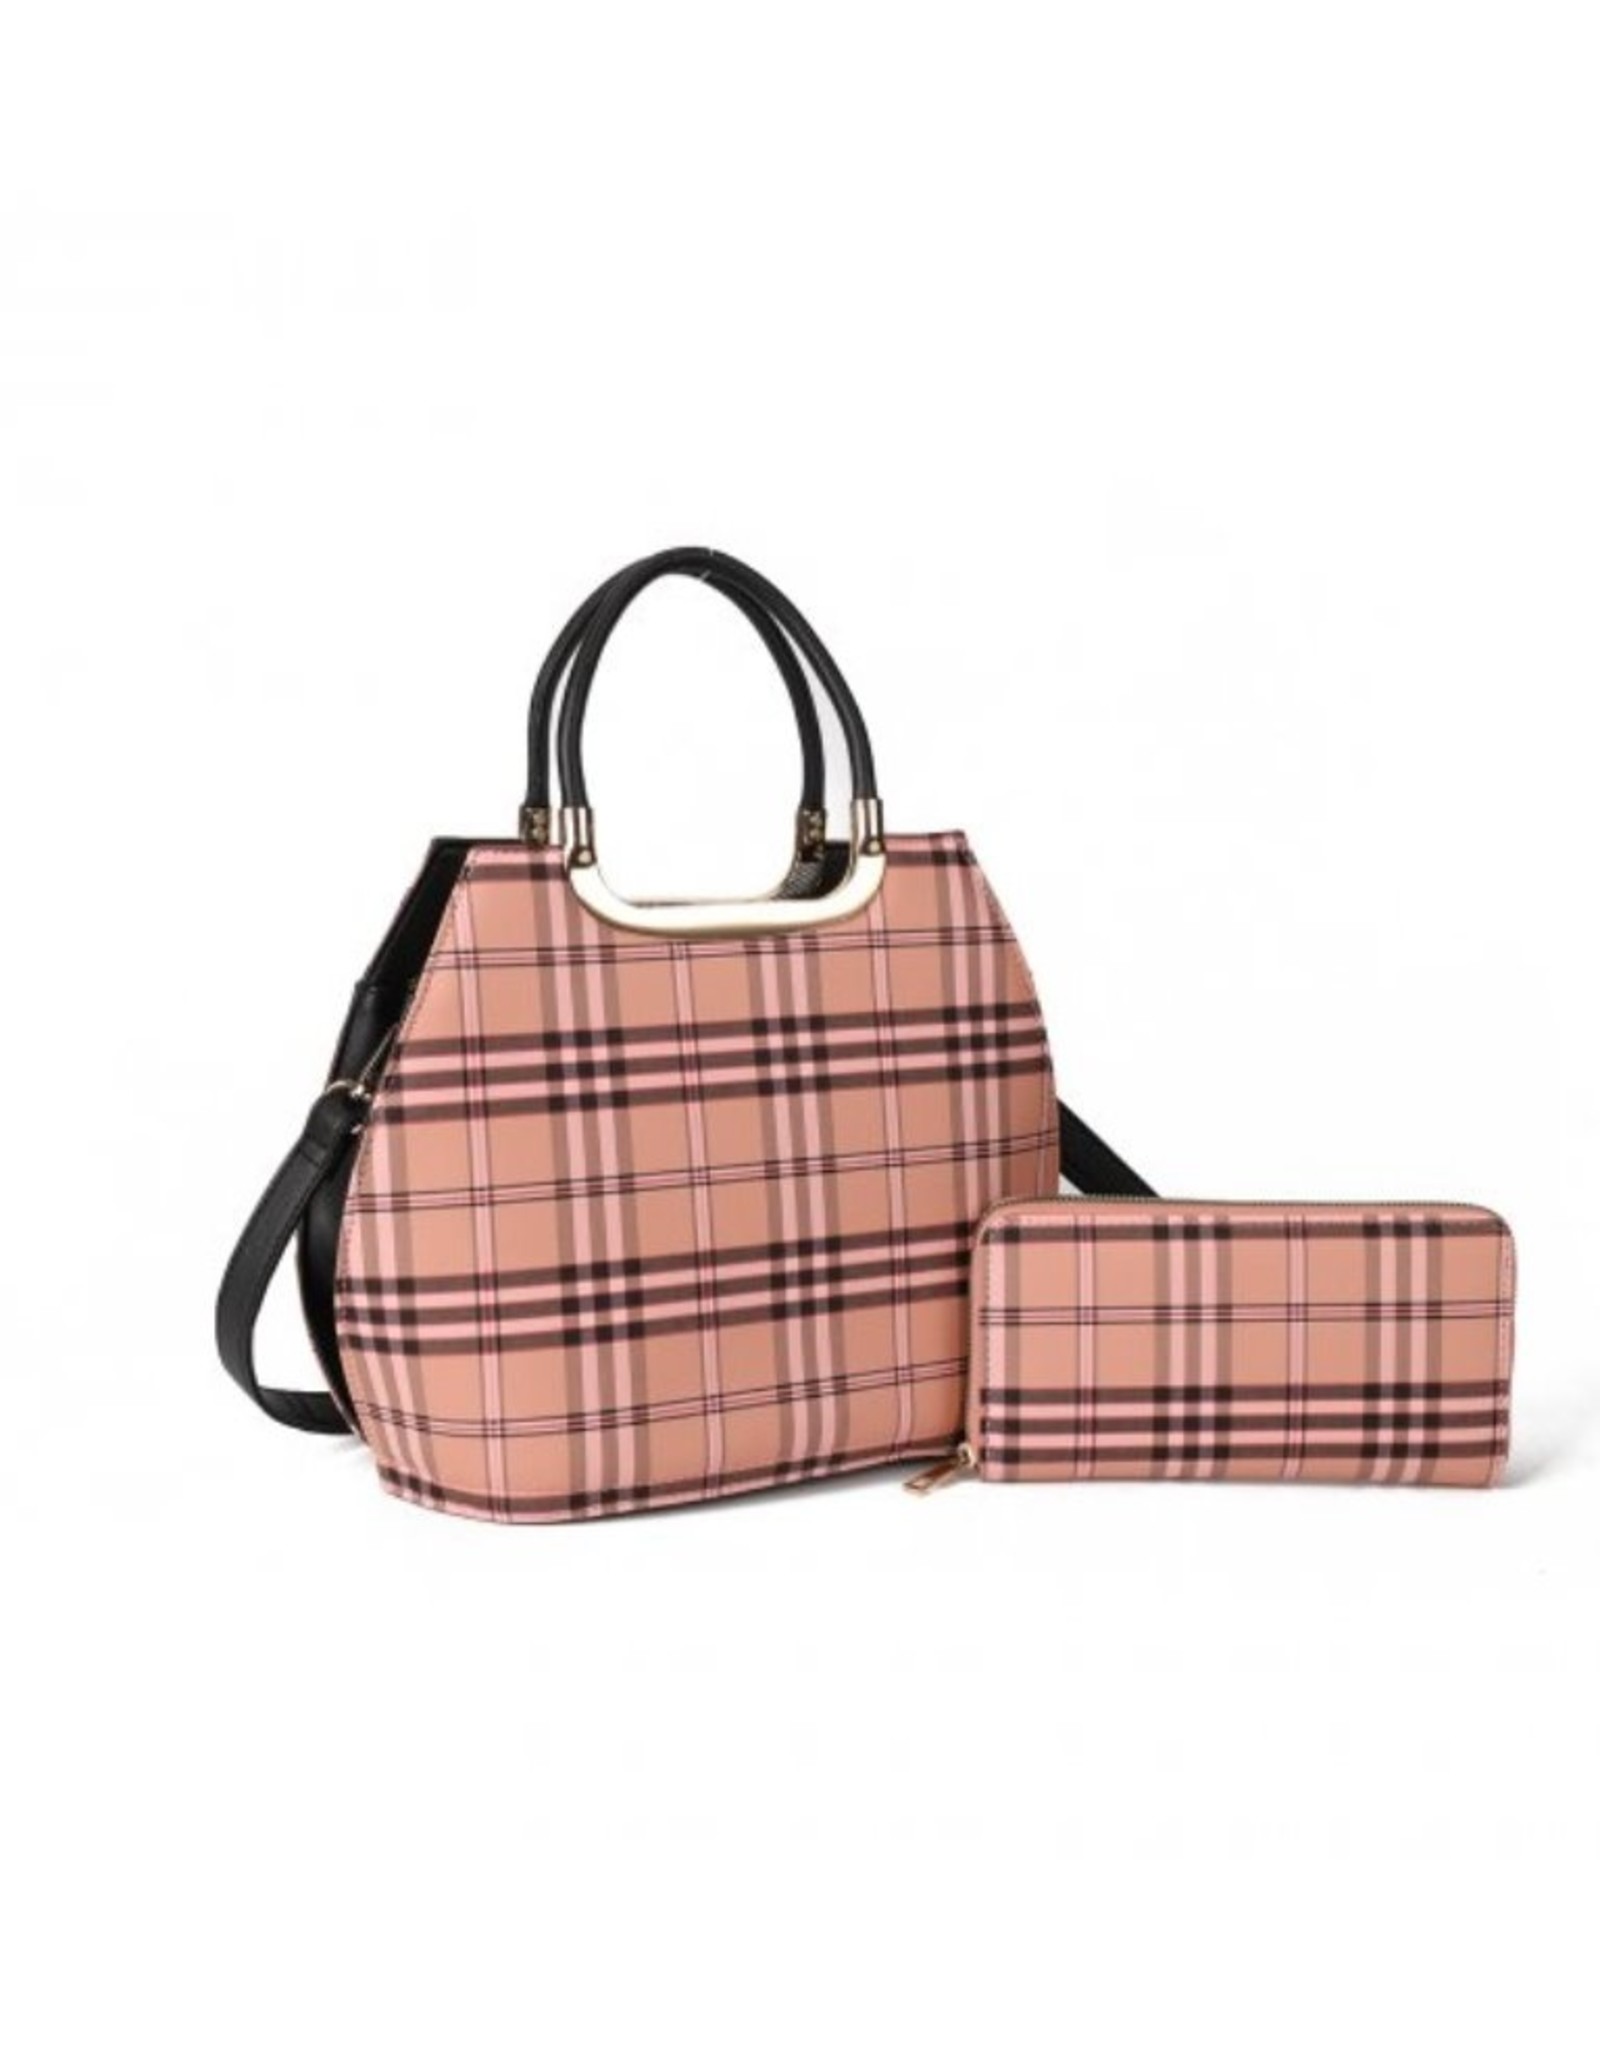 Checkered Pattern Bucket Bag, Vintage Style Shoulder Bag, Trendy